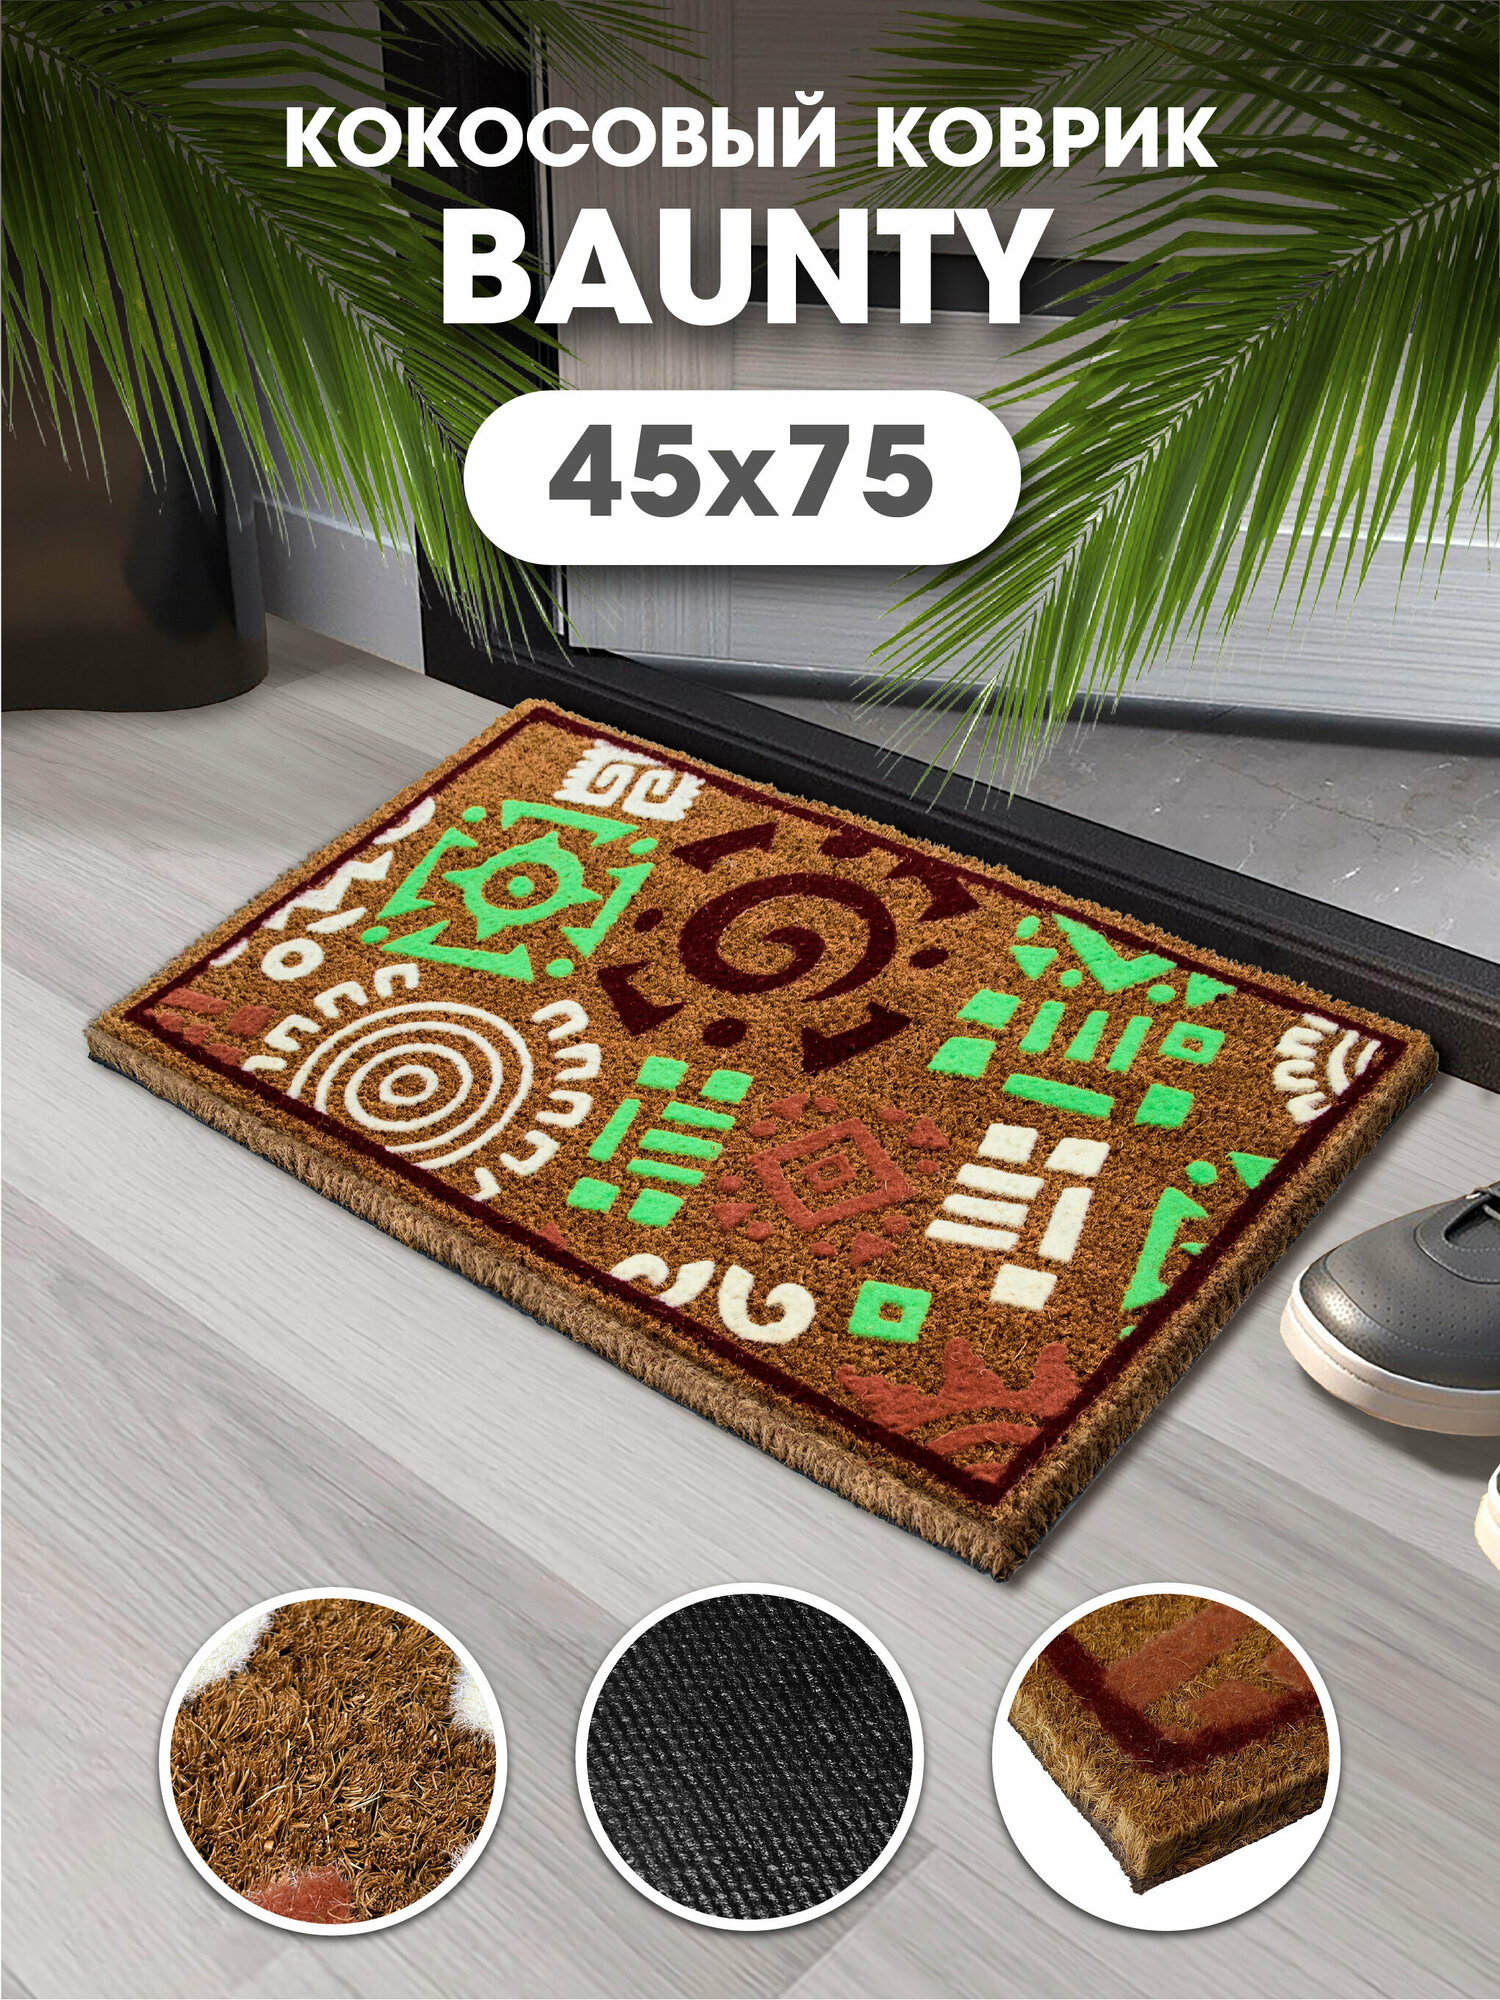 Коврик придверный кокосовый BAUNTY B002 Знаки 45х75, грязезащитный коврик в прихожую для обуви